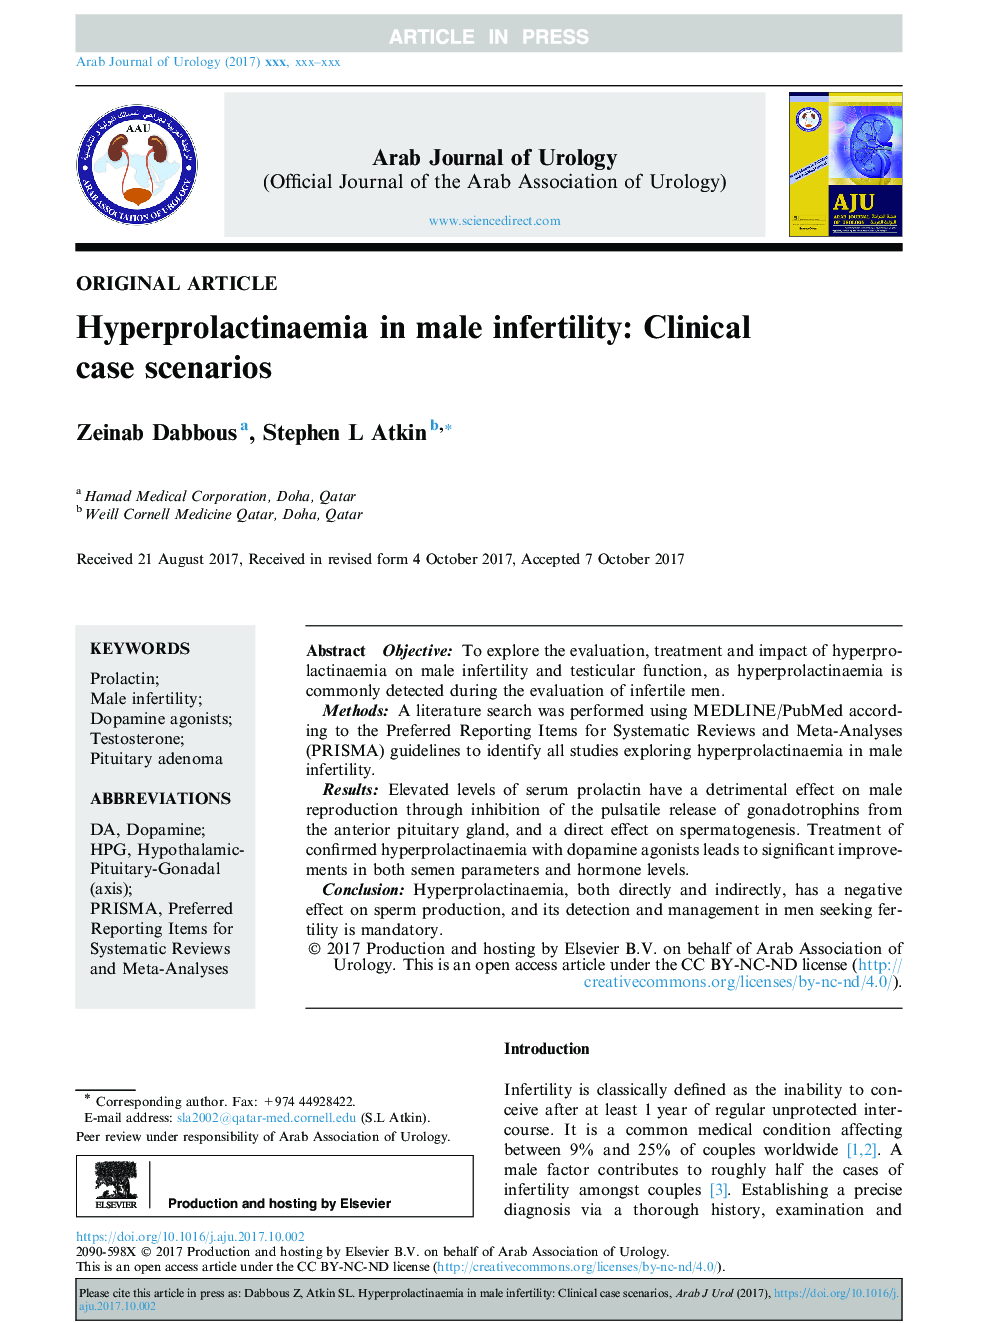 هیپرپرولاکتینمی در ناباروری مردان: سناریوهای بالینی 